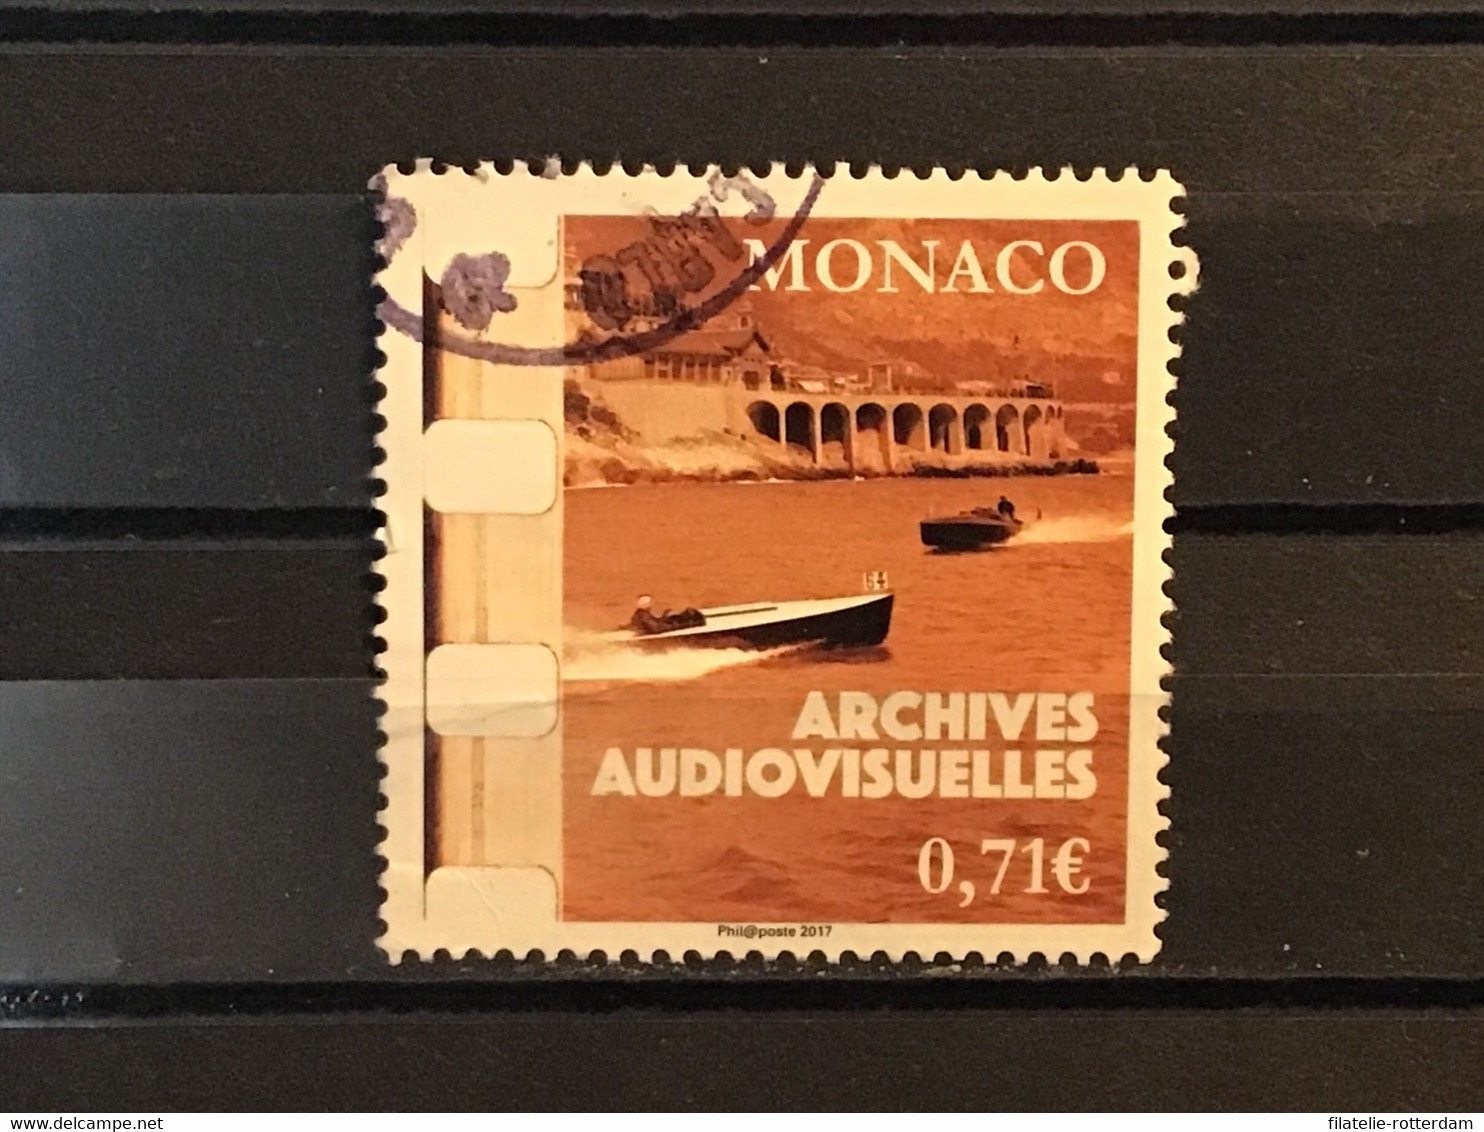 Monaco - Audiovisuele Archieven (0.71) 2017 - Gebruikt